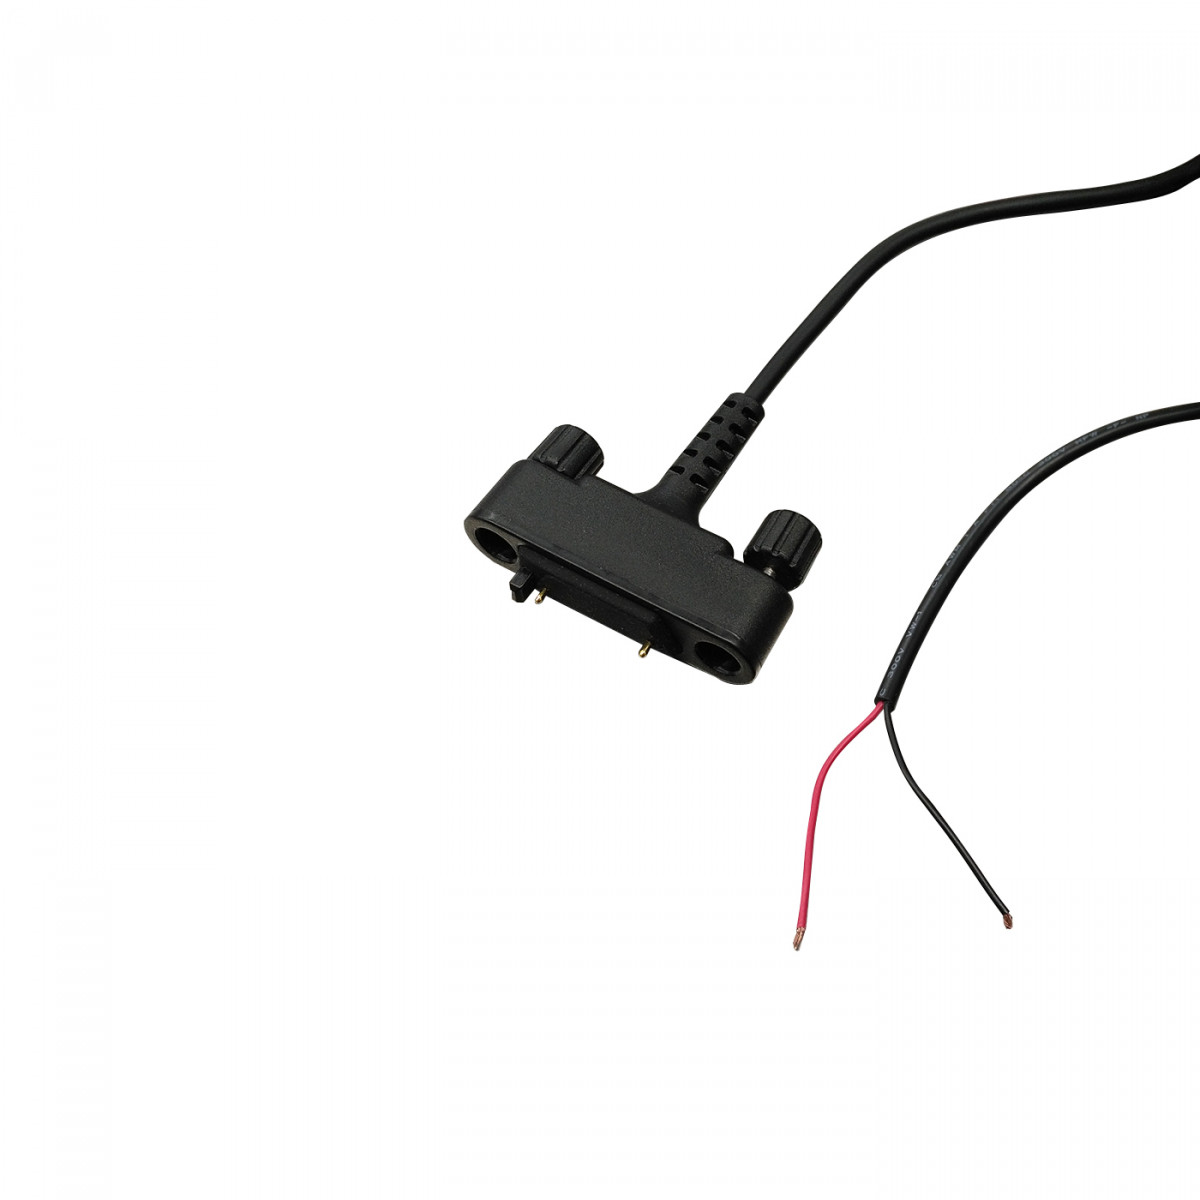 SEPURA car charging cable, single for SC21 Car-Kit Power, car cradle 700-00875